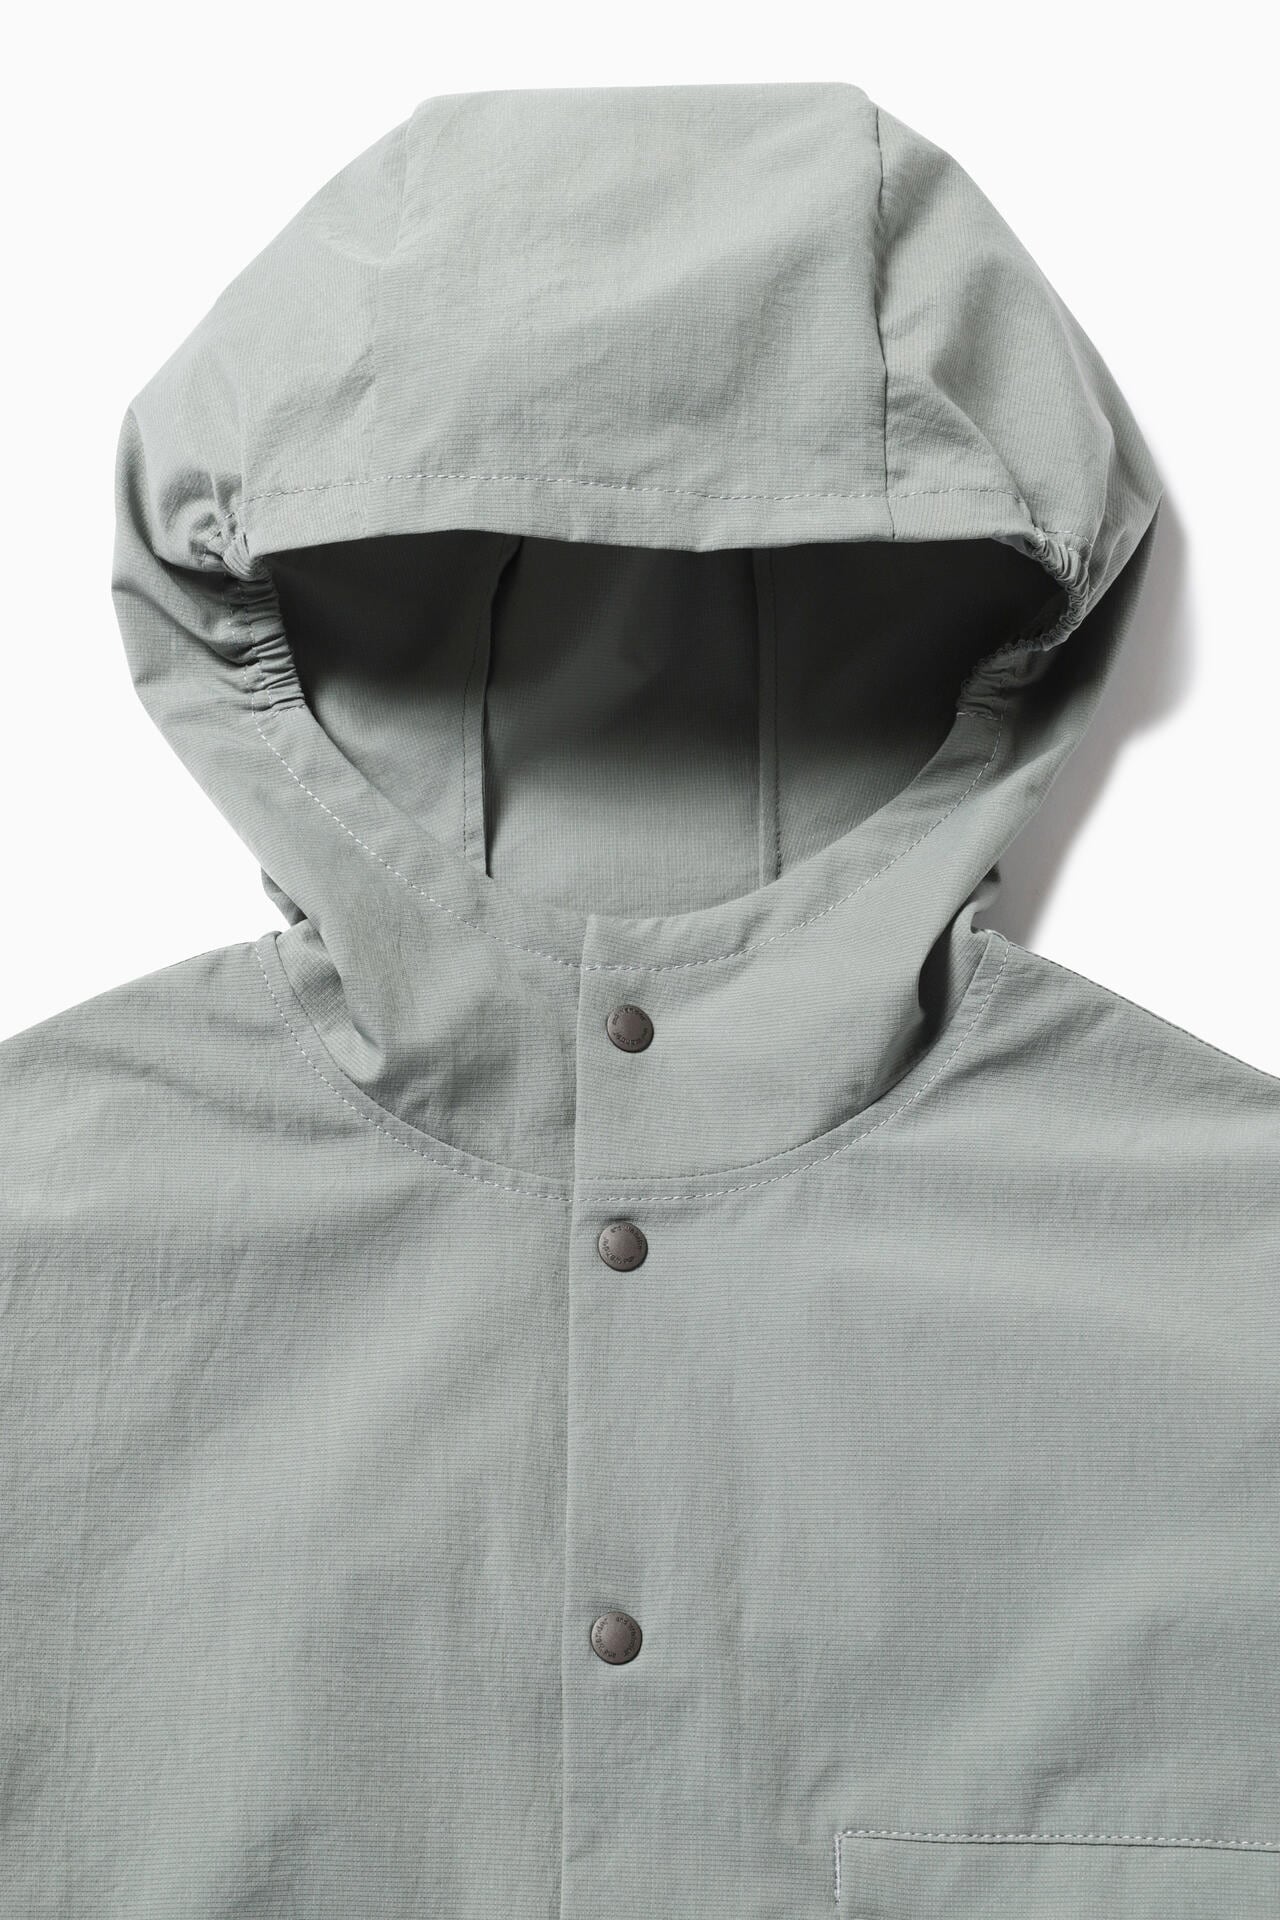 dry breathable hoodie